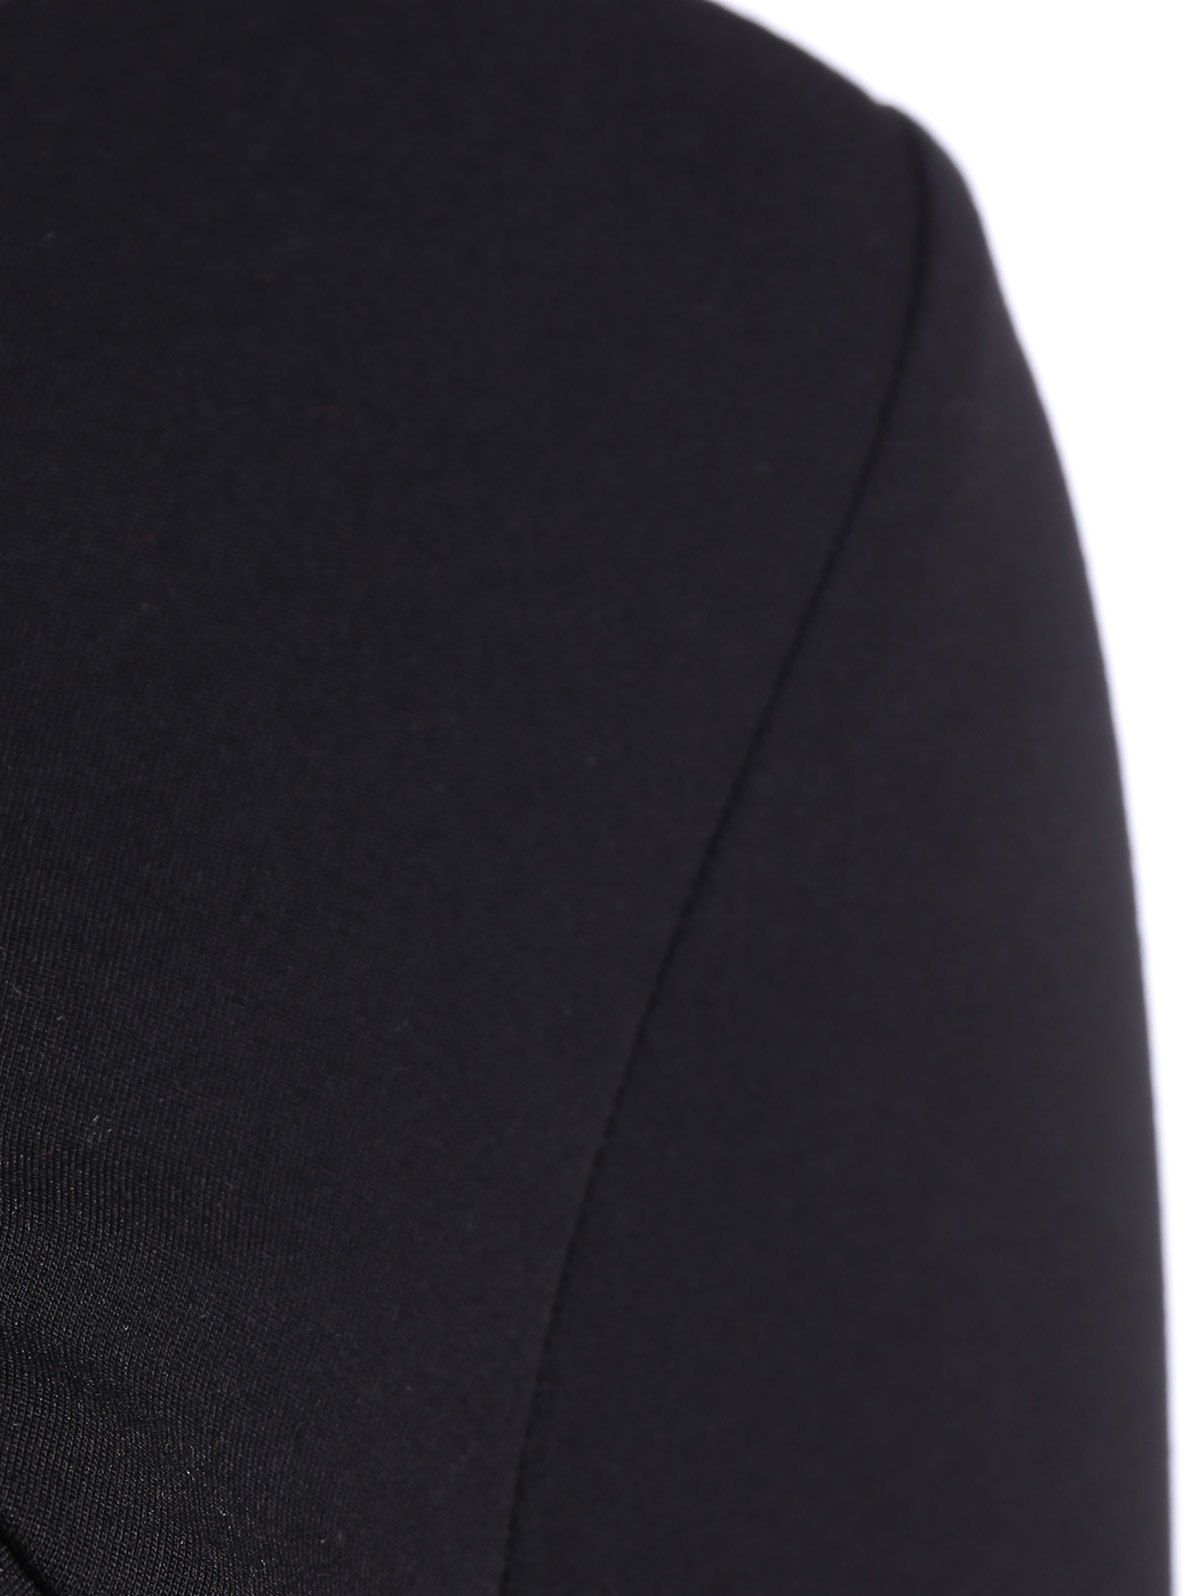 2018 Vintage Mini Flare Dress BLACK S In Vintage Dresses Online Store ...